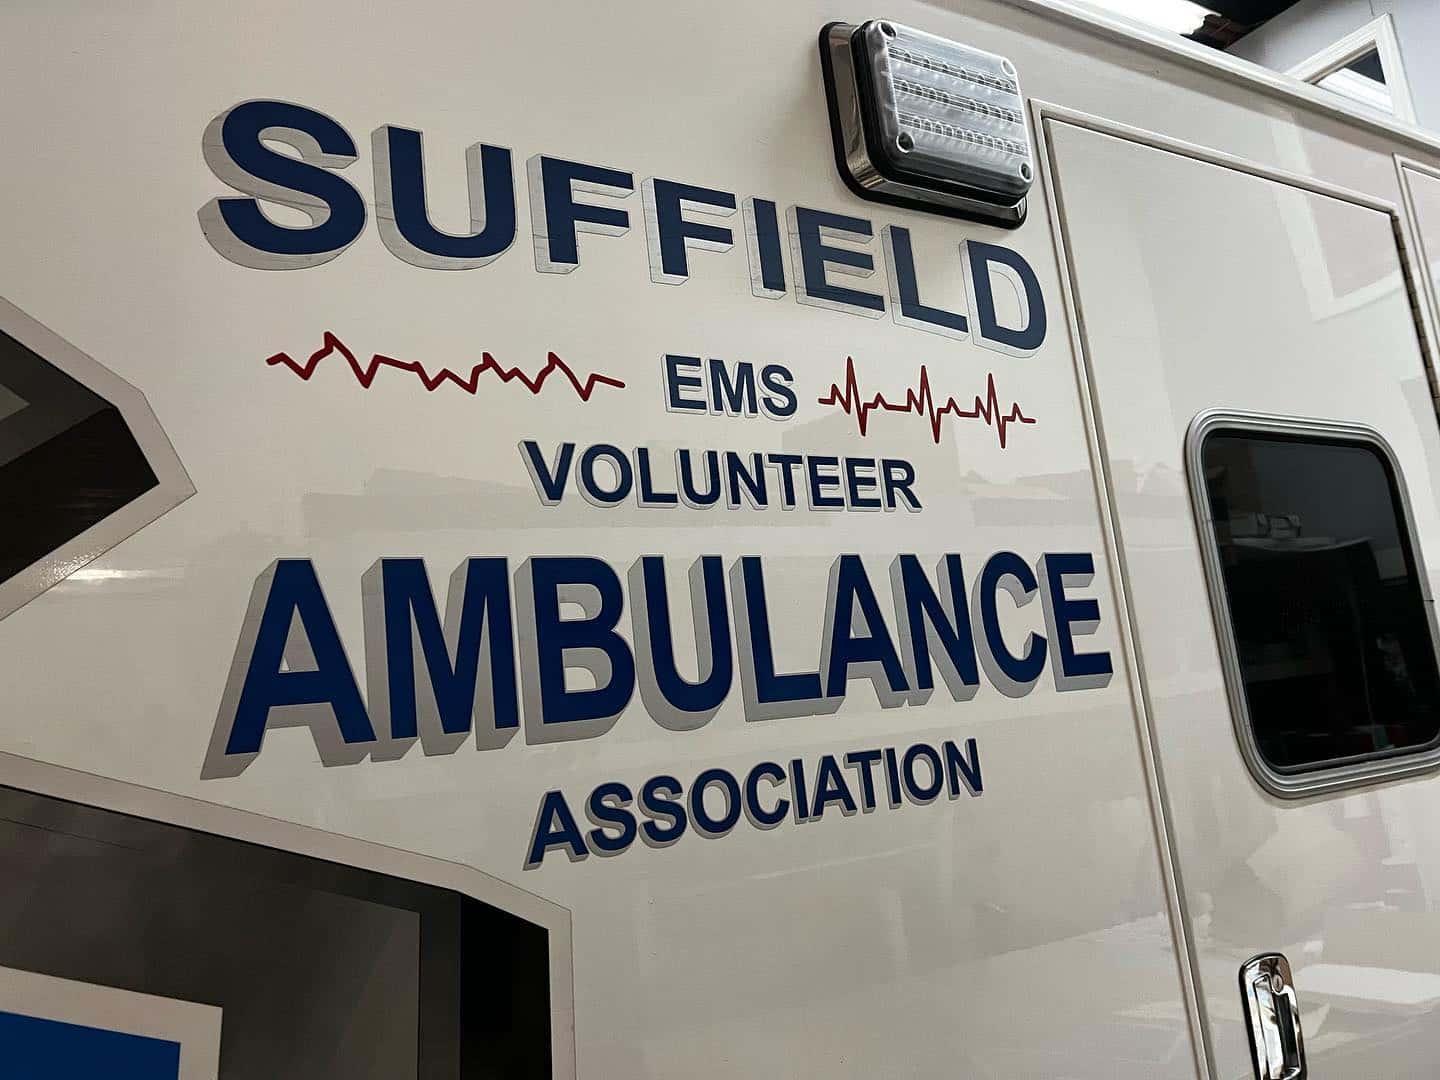 Suffield Ambulance Association